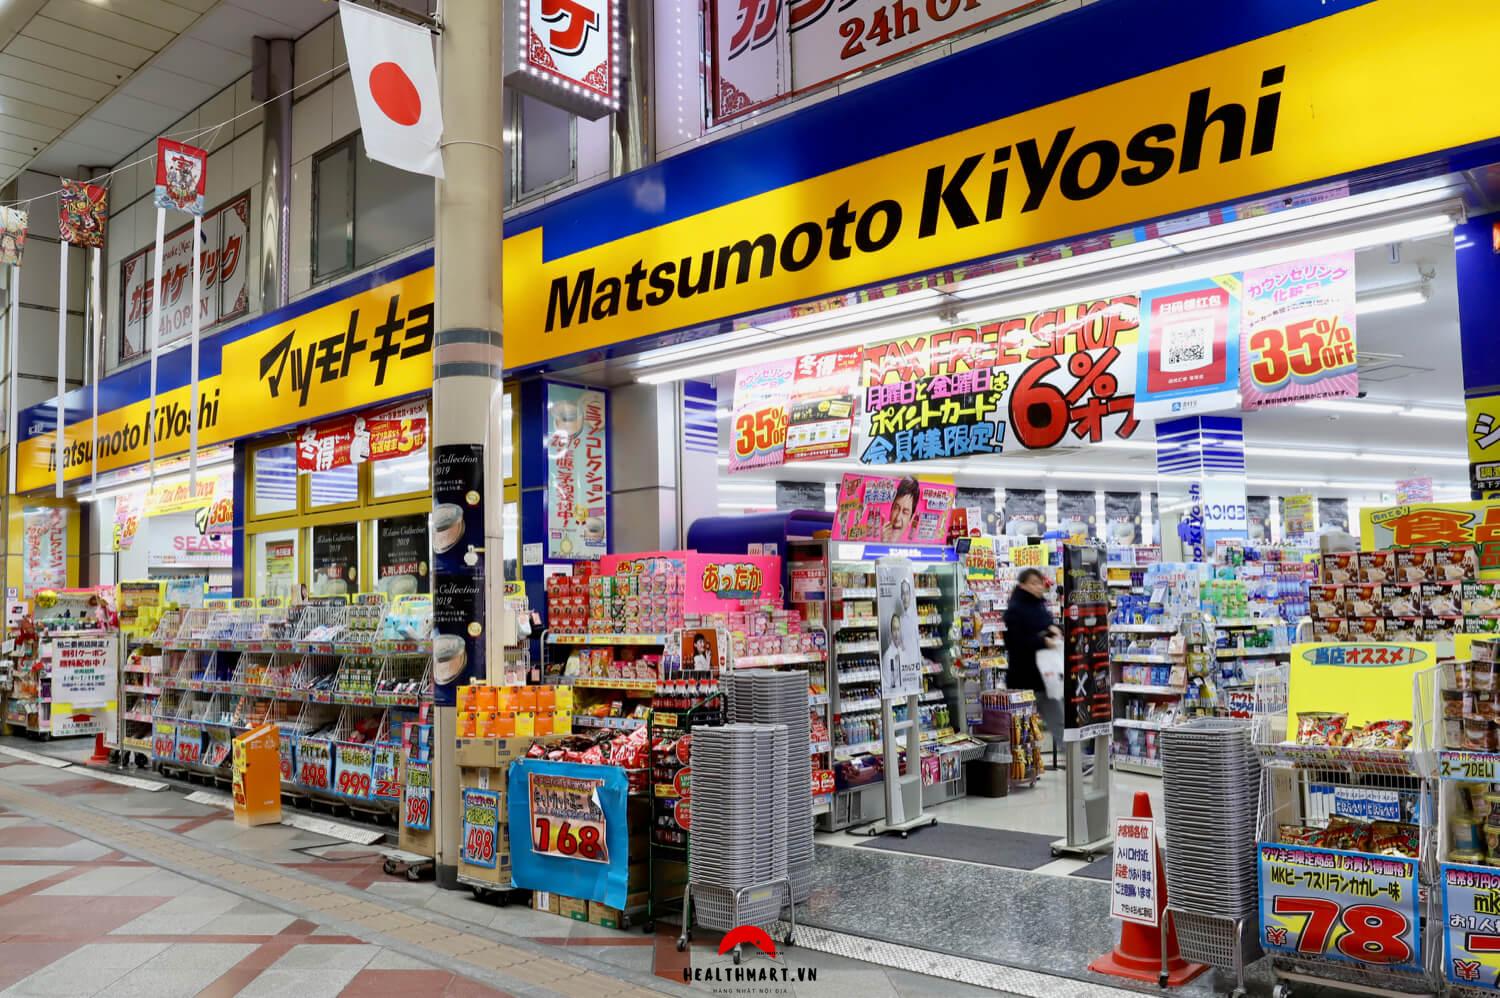 Japanese pharmacy chain Matsumotokiyoshi heads to Vietnam